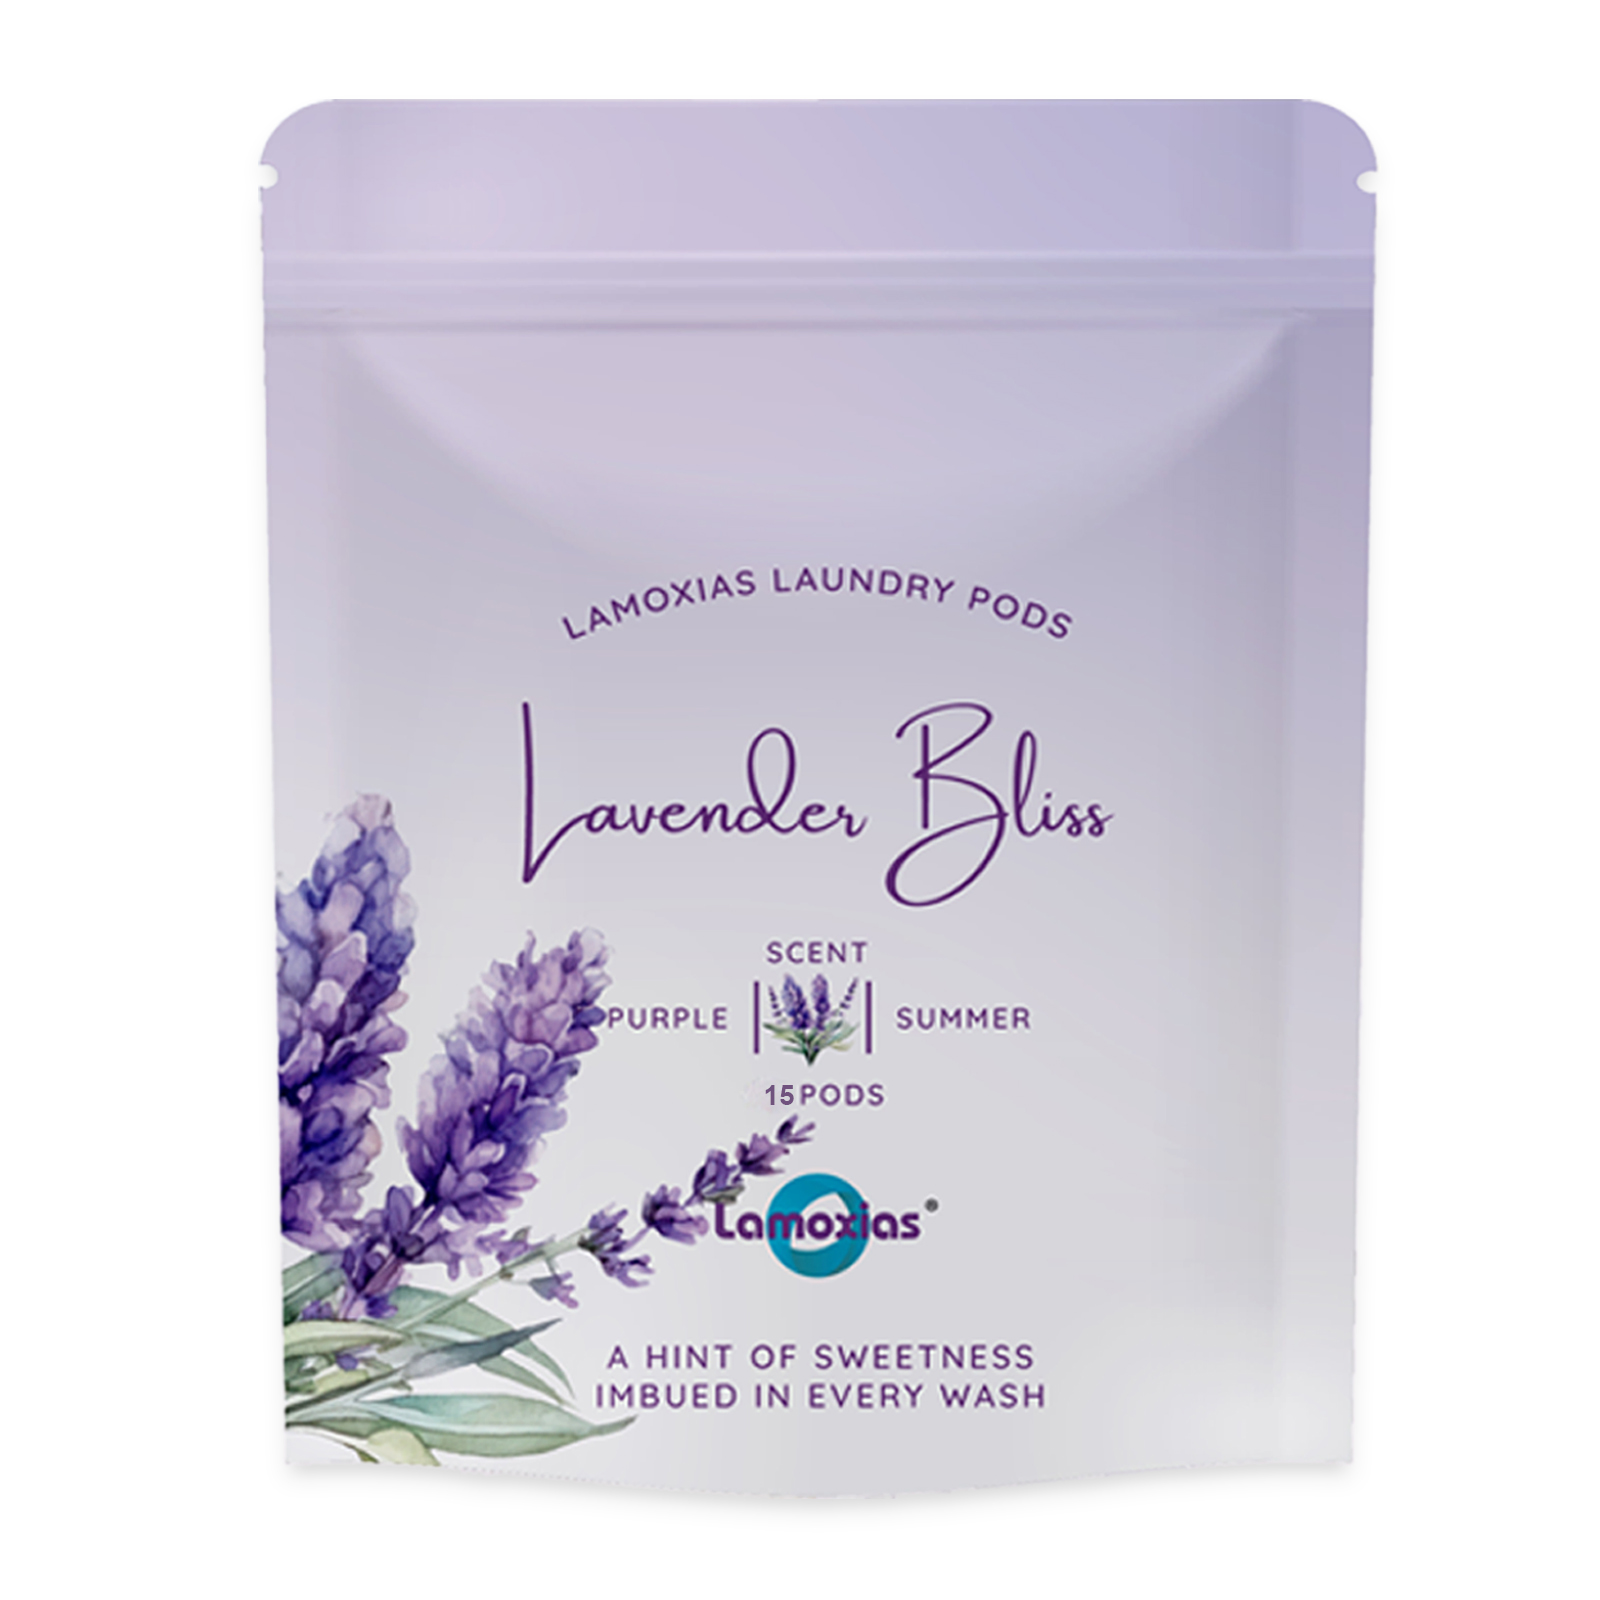 [Bundle 6] Lamoxias Laundry Capsule Detergent Refill -15pods -Lavender